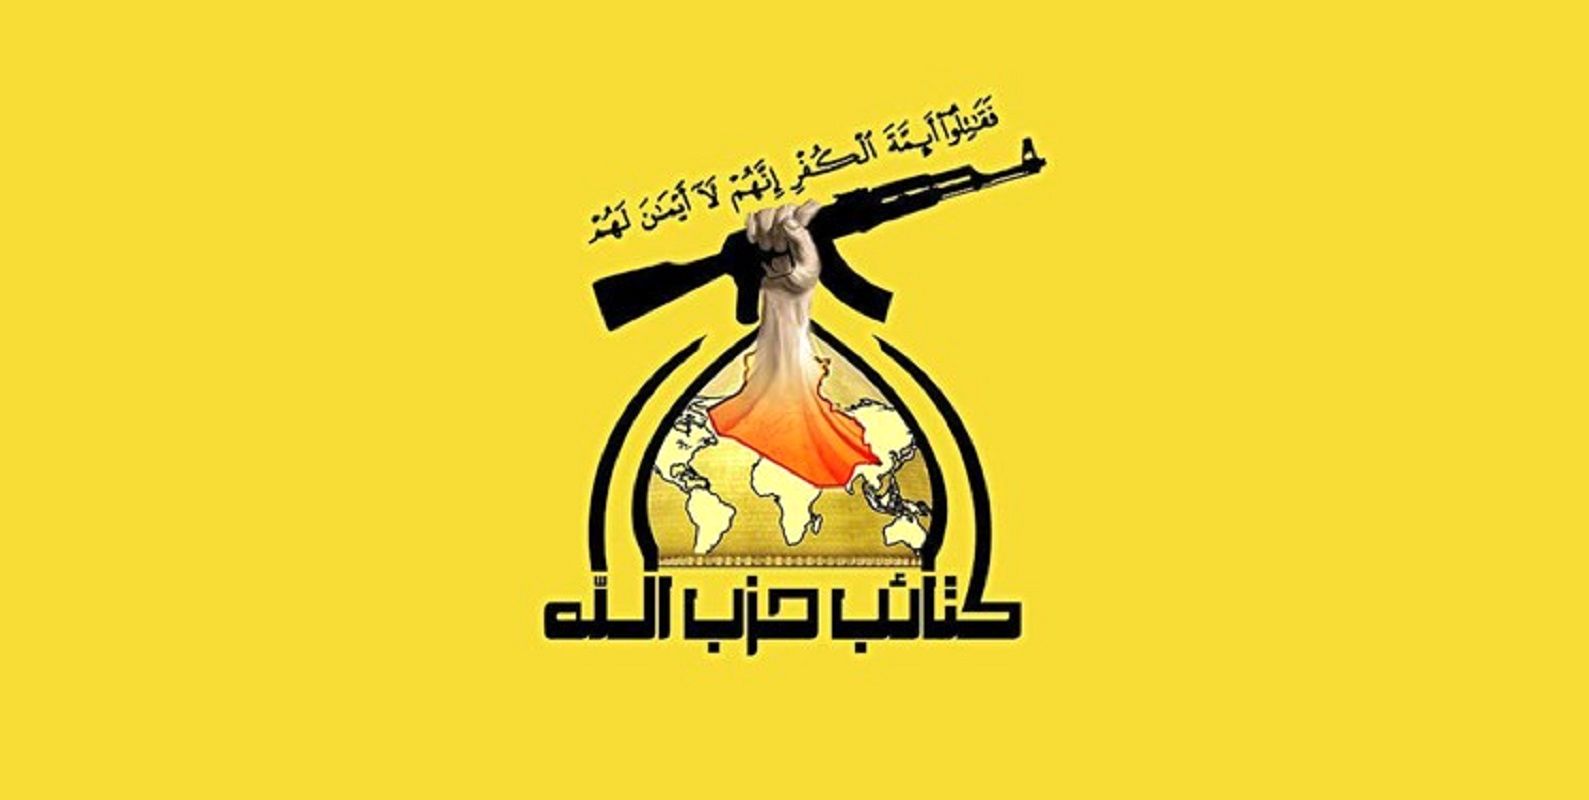 کتائب حزب الله آمریکا را تهدید کرد